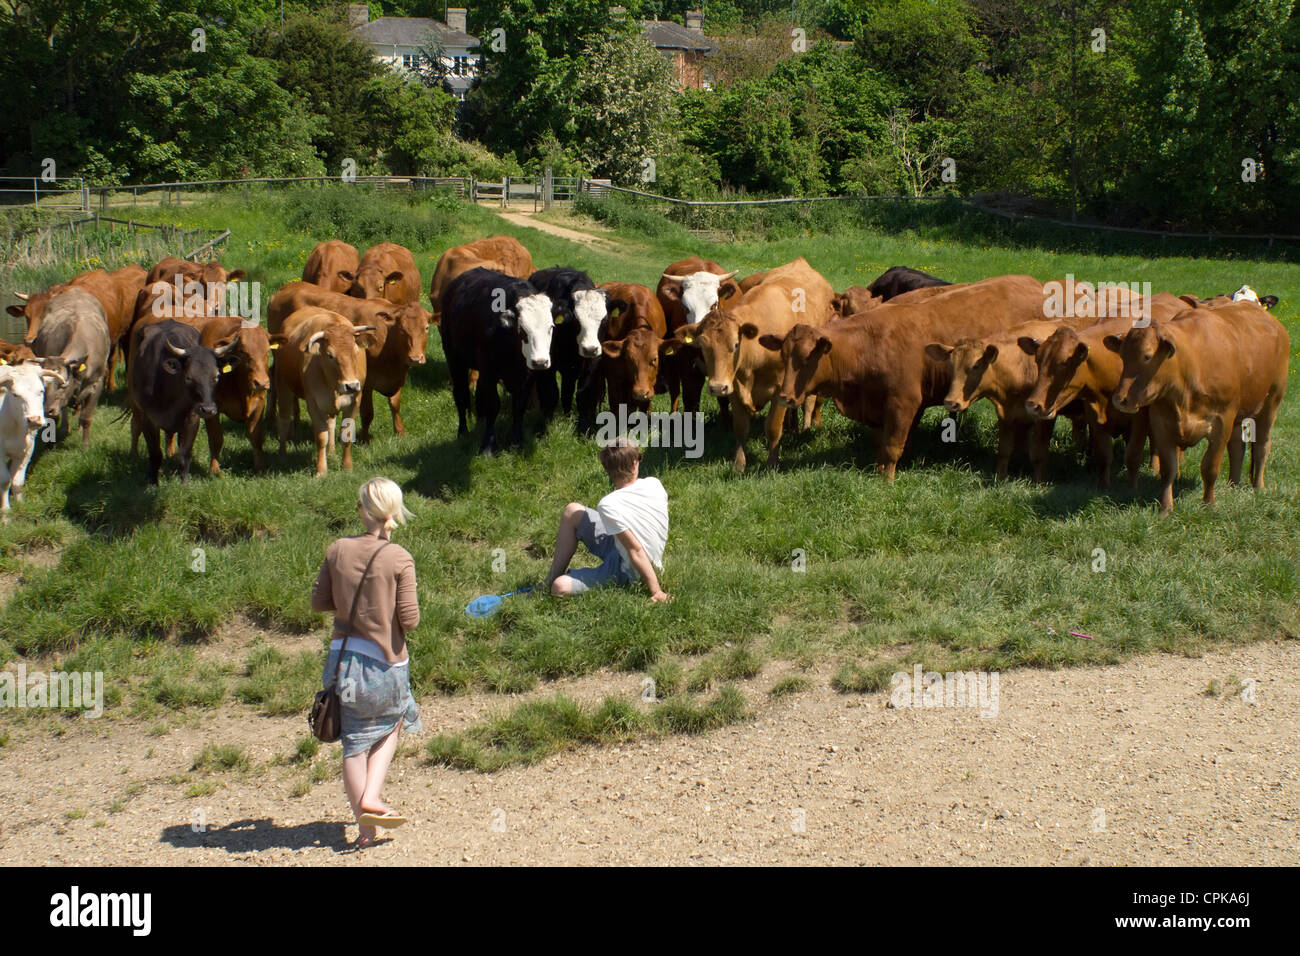 Zwei Personen in einem Feld von einer Herde Kühe konfrontiert. Stockfoto